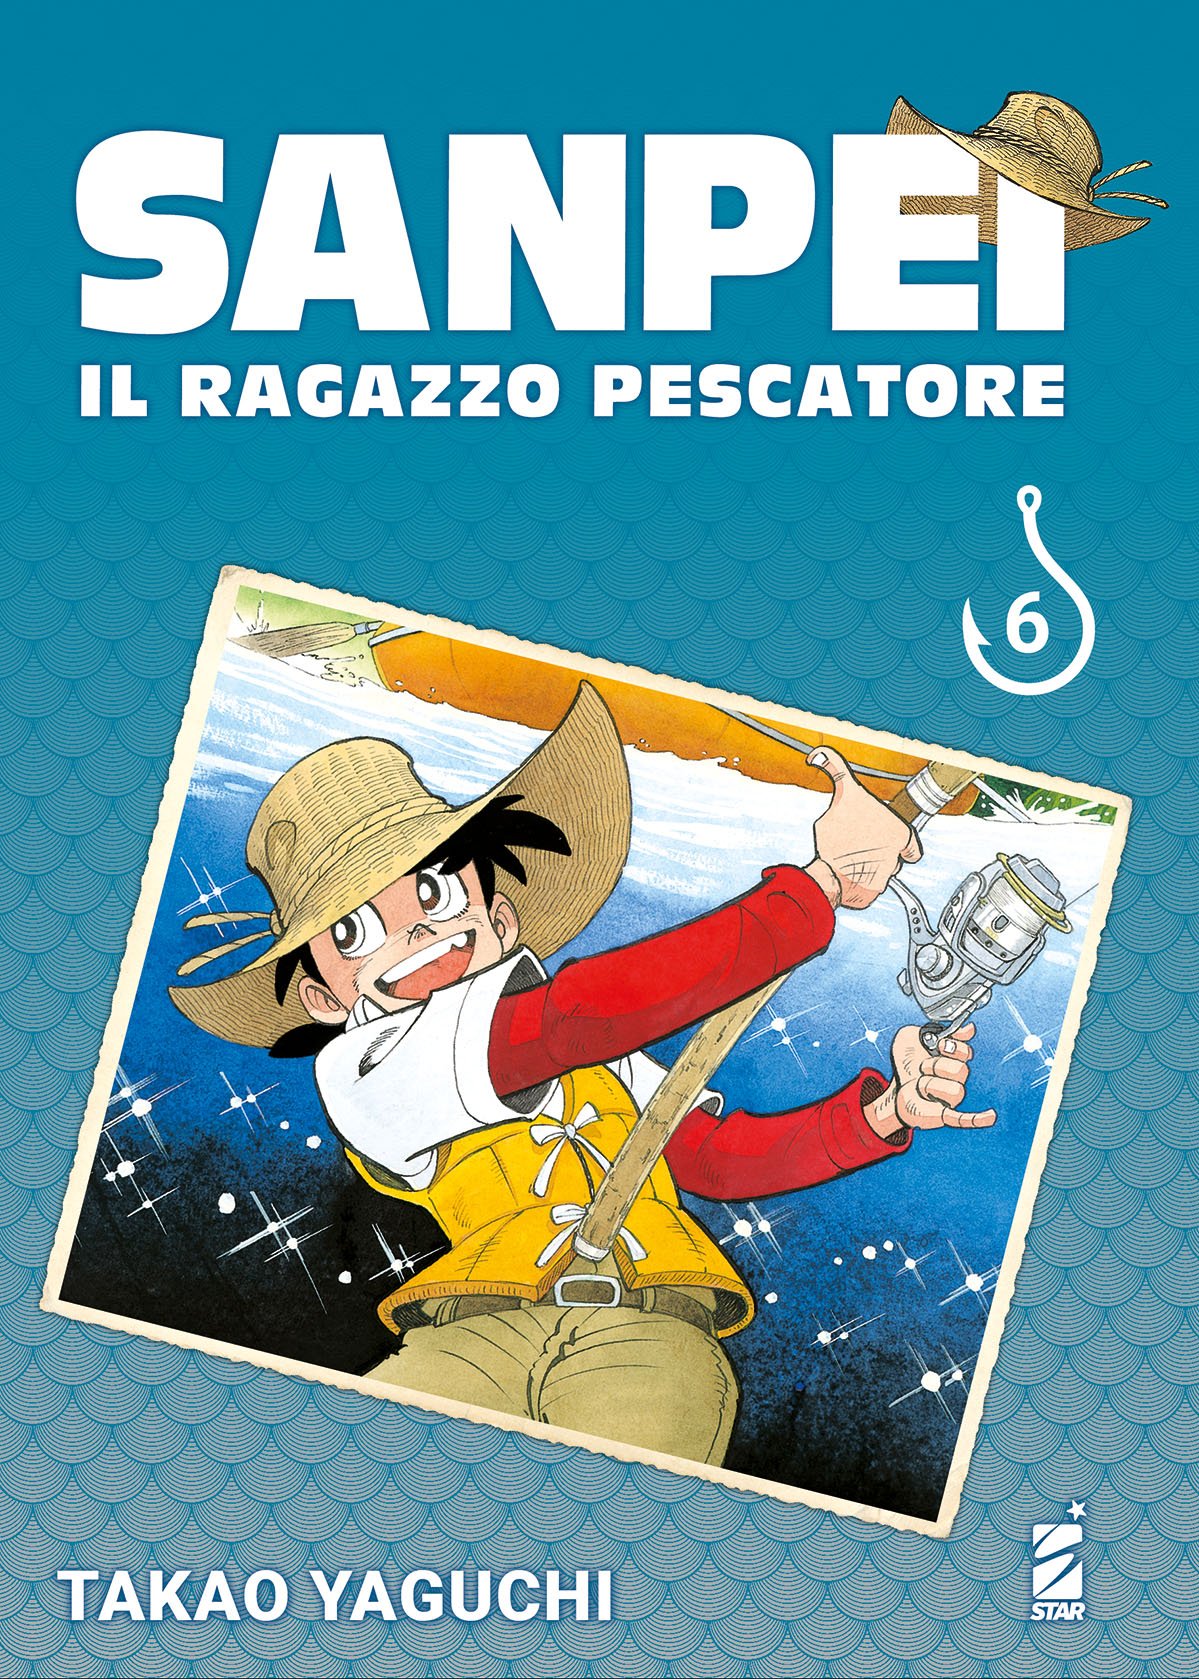 SANPEI IL RAGAZZO PESCATORE TRIBUTE EDITION 6 DI 12